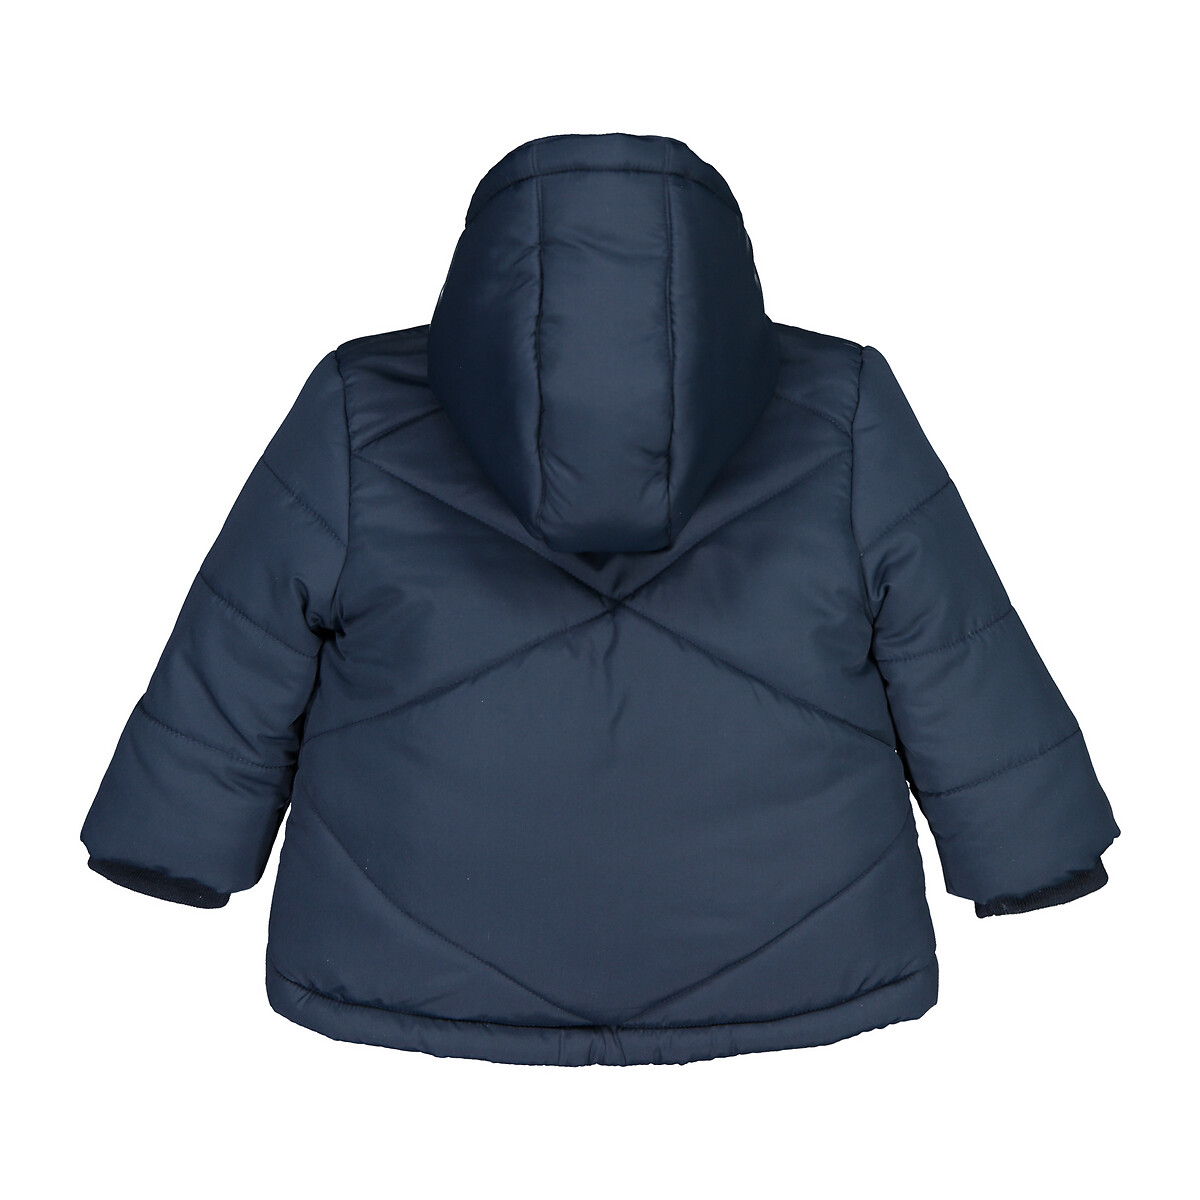 Куртка La Redoute Стеганая с капюшоном подкладка из флиса 3 мес-3лет 2 года - 86 см синий, размер 2 года - 86 см - фото 2